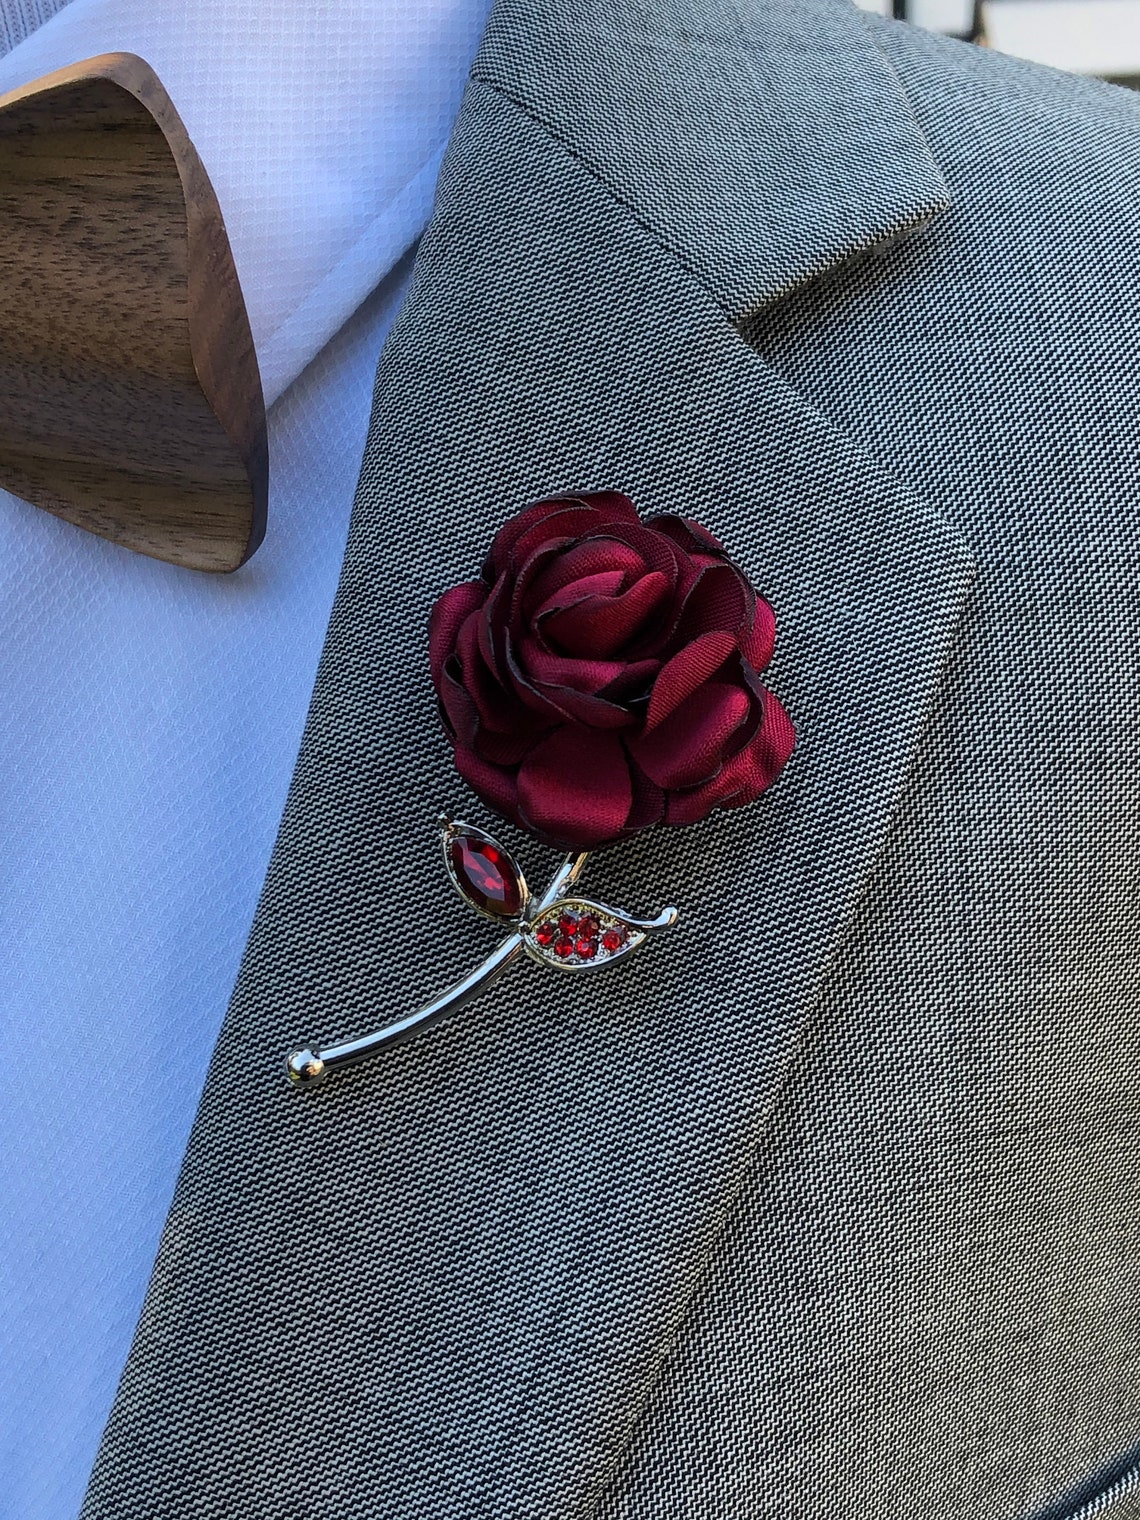 Rose Flower Red Lapel Pin Enamel Pin Wedding Lapel Pin | Etsy